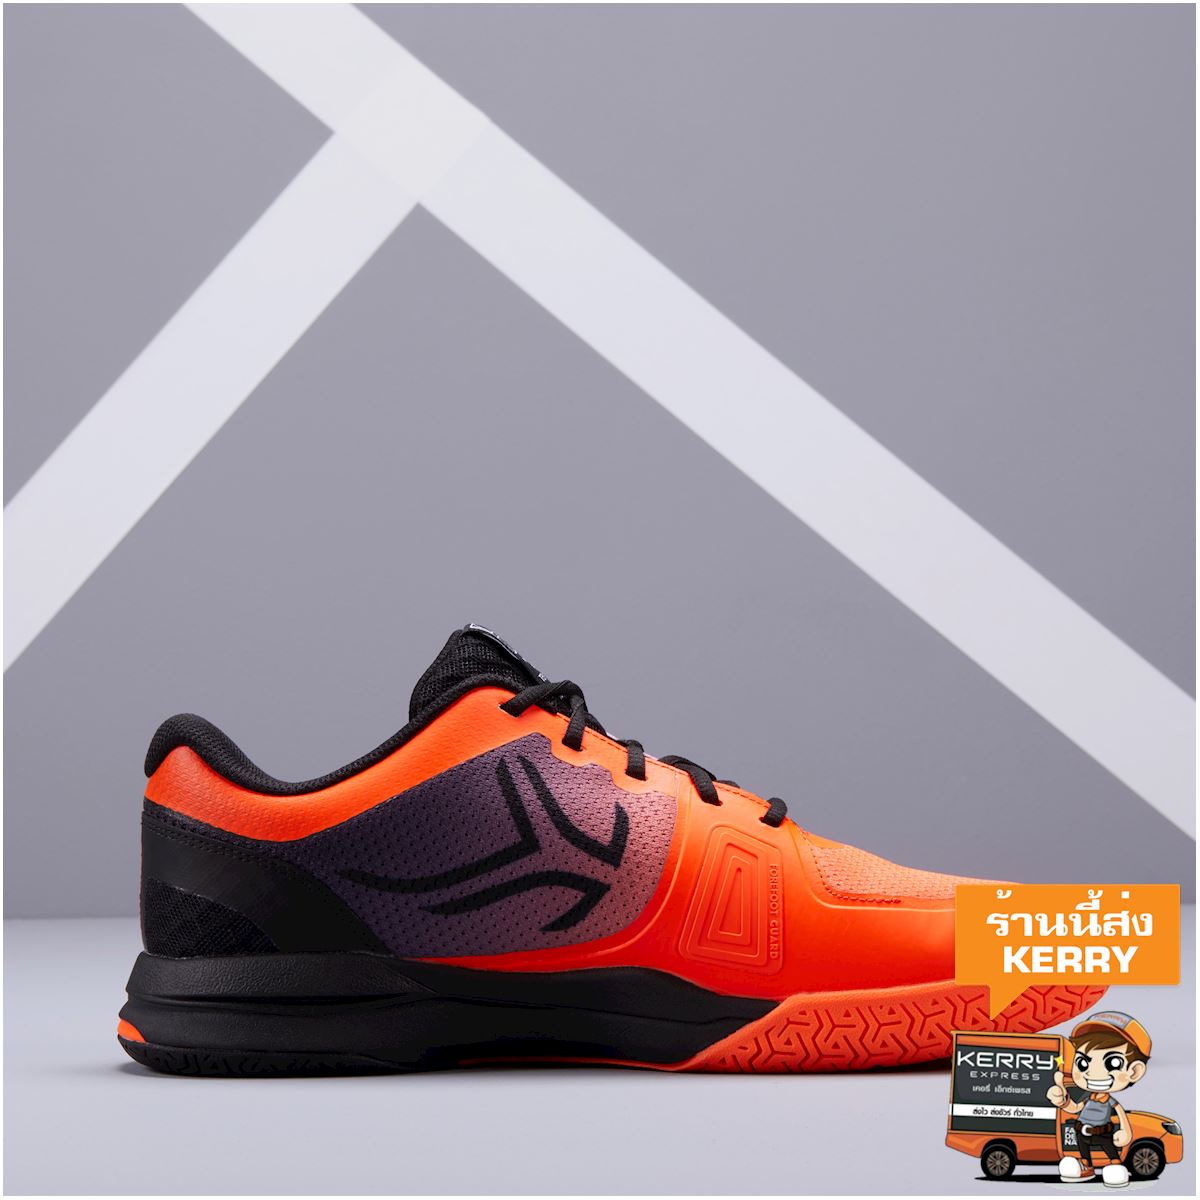 รองเท้าเทนนิสผู้ชายสำหรับพื้นสนามหลายประเภทรุ่น TS590 (สีส้ม/ดำ) รองเท้า ฟร้อนท์เทนนิส เทนนิส รองเท้ากีฬา กีฬาแร็กเก็ต